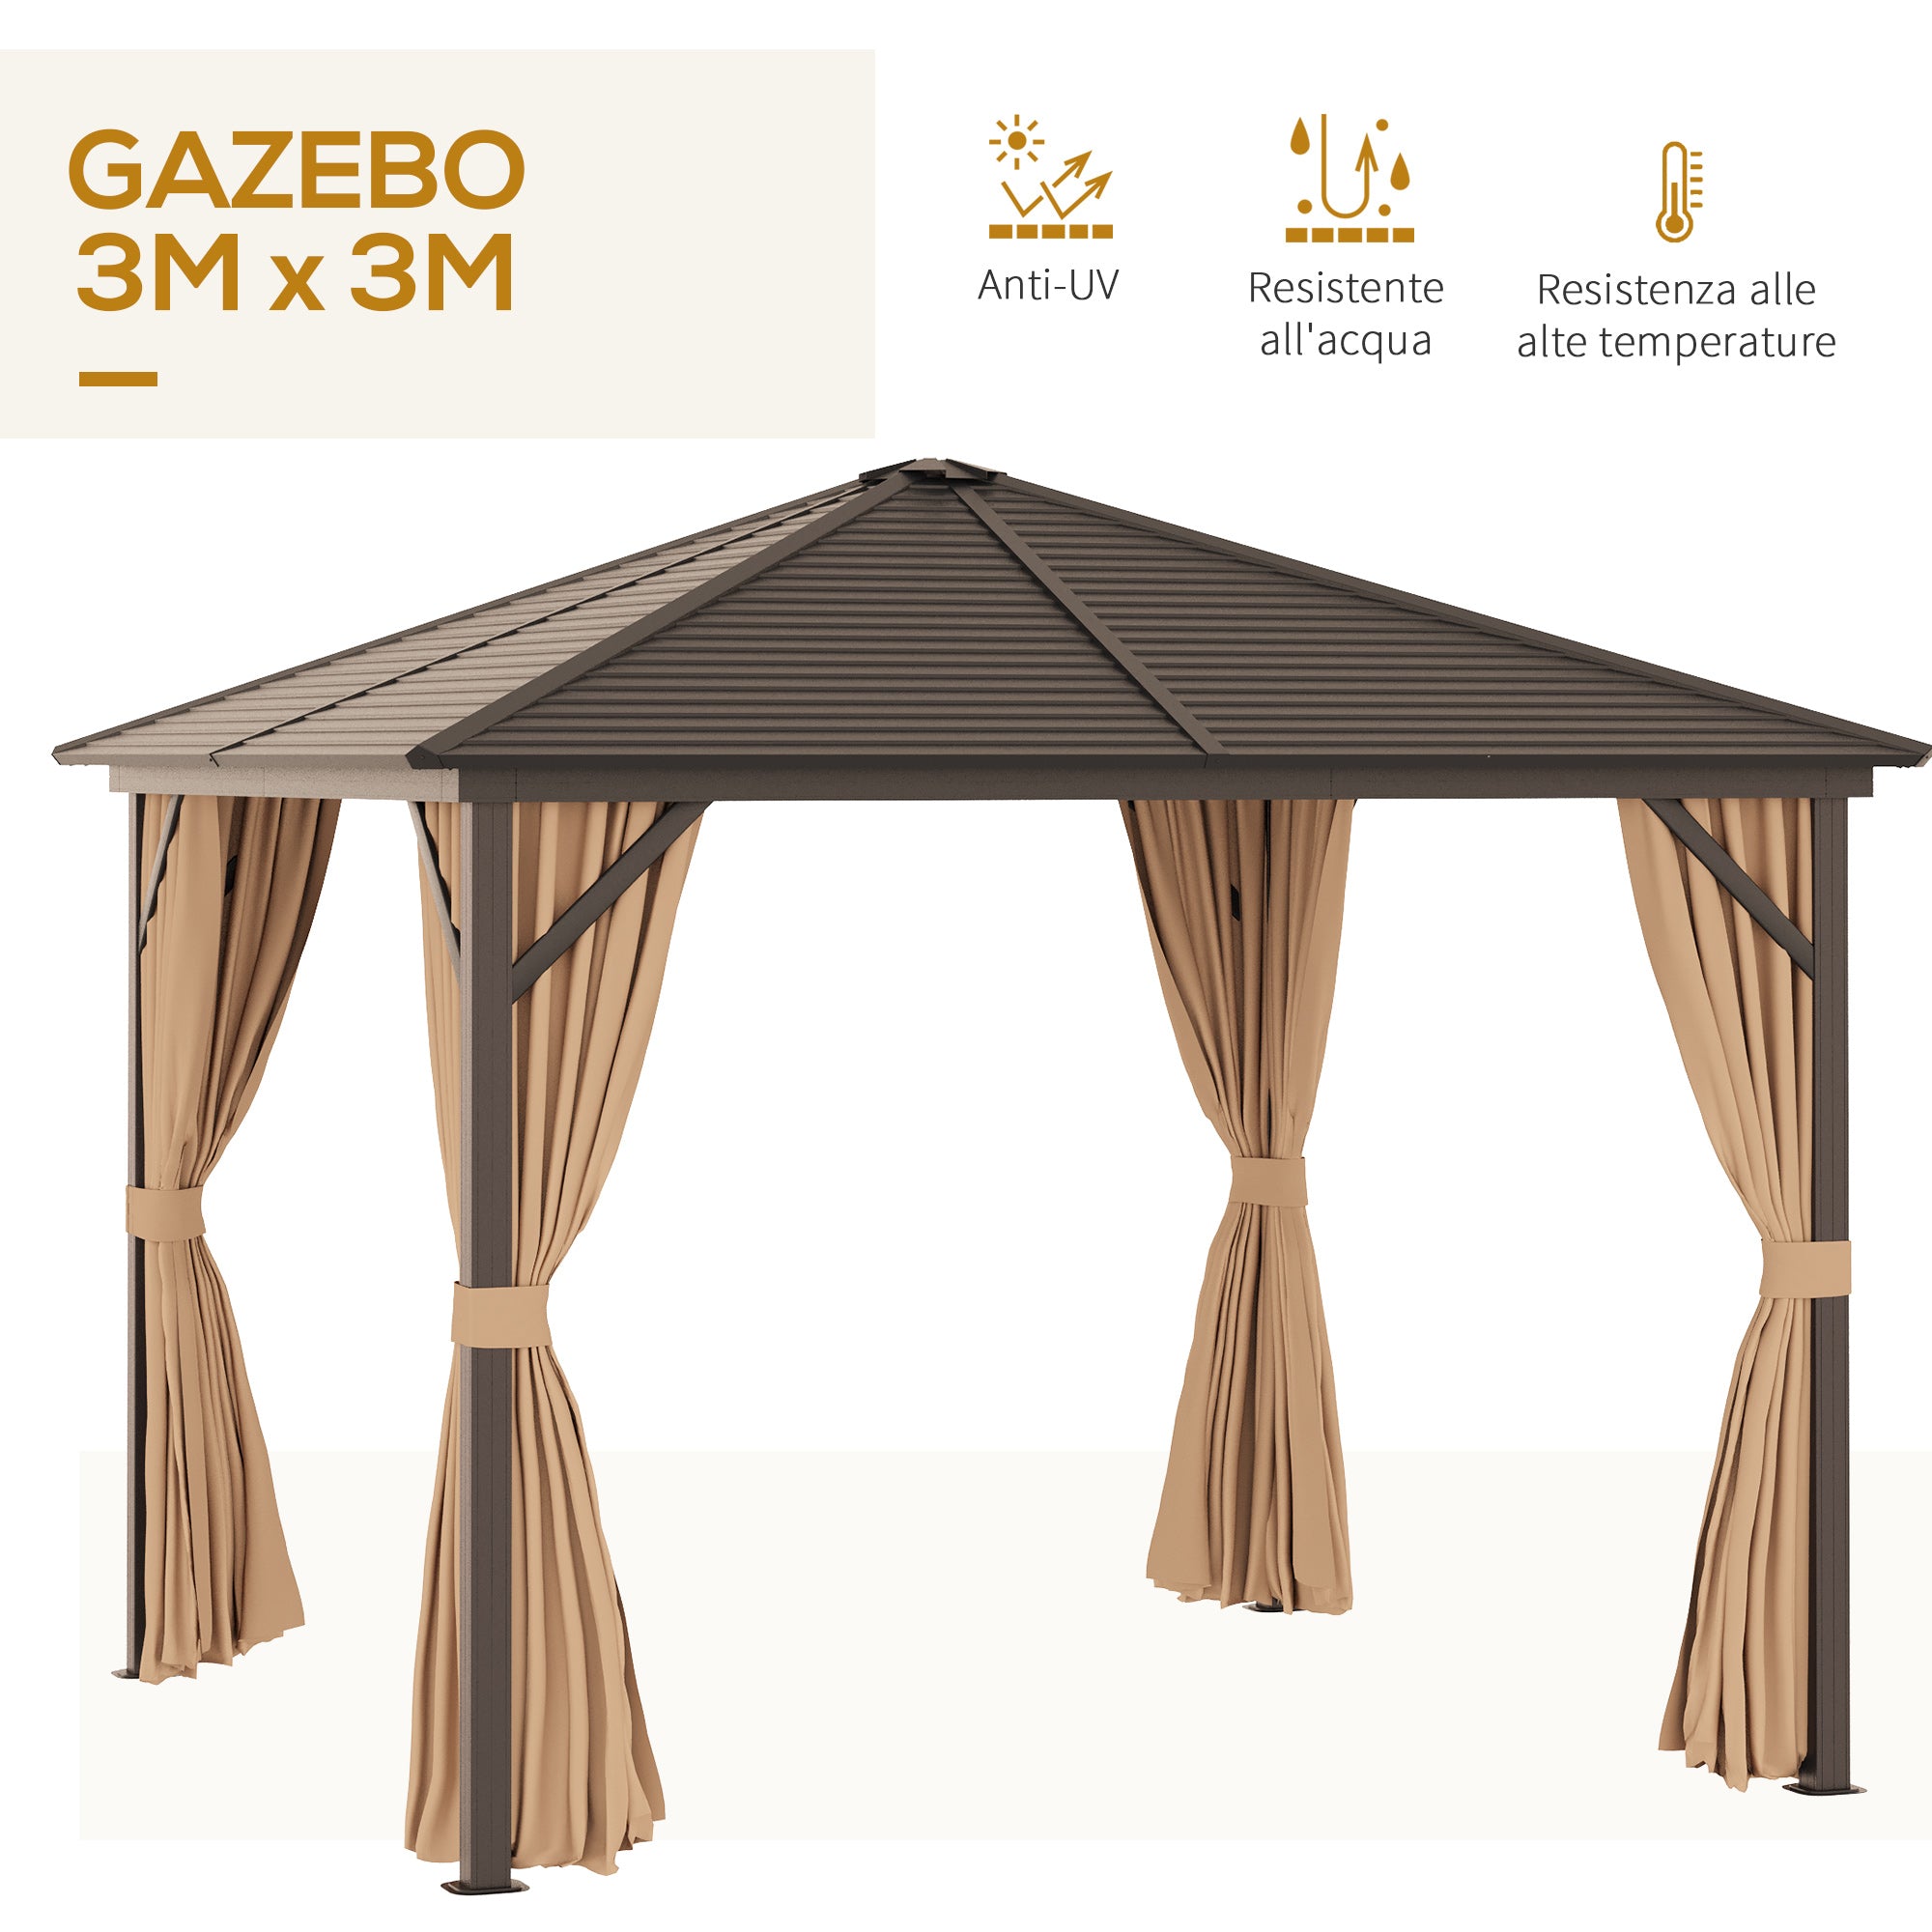 EASYCOMFORT Gazebo da Giardino 3x3m in Alluminio con Zanzariera, Tende  Laterali e Tetto Rigido, Marrone